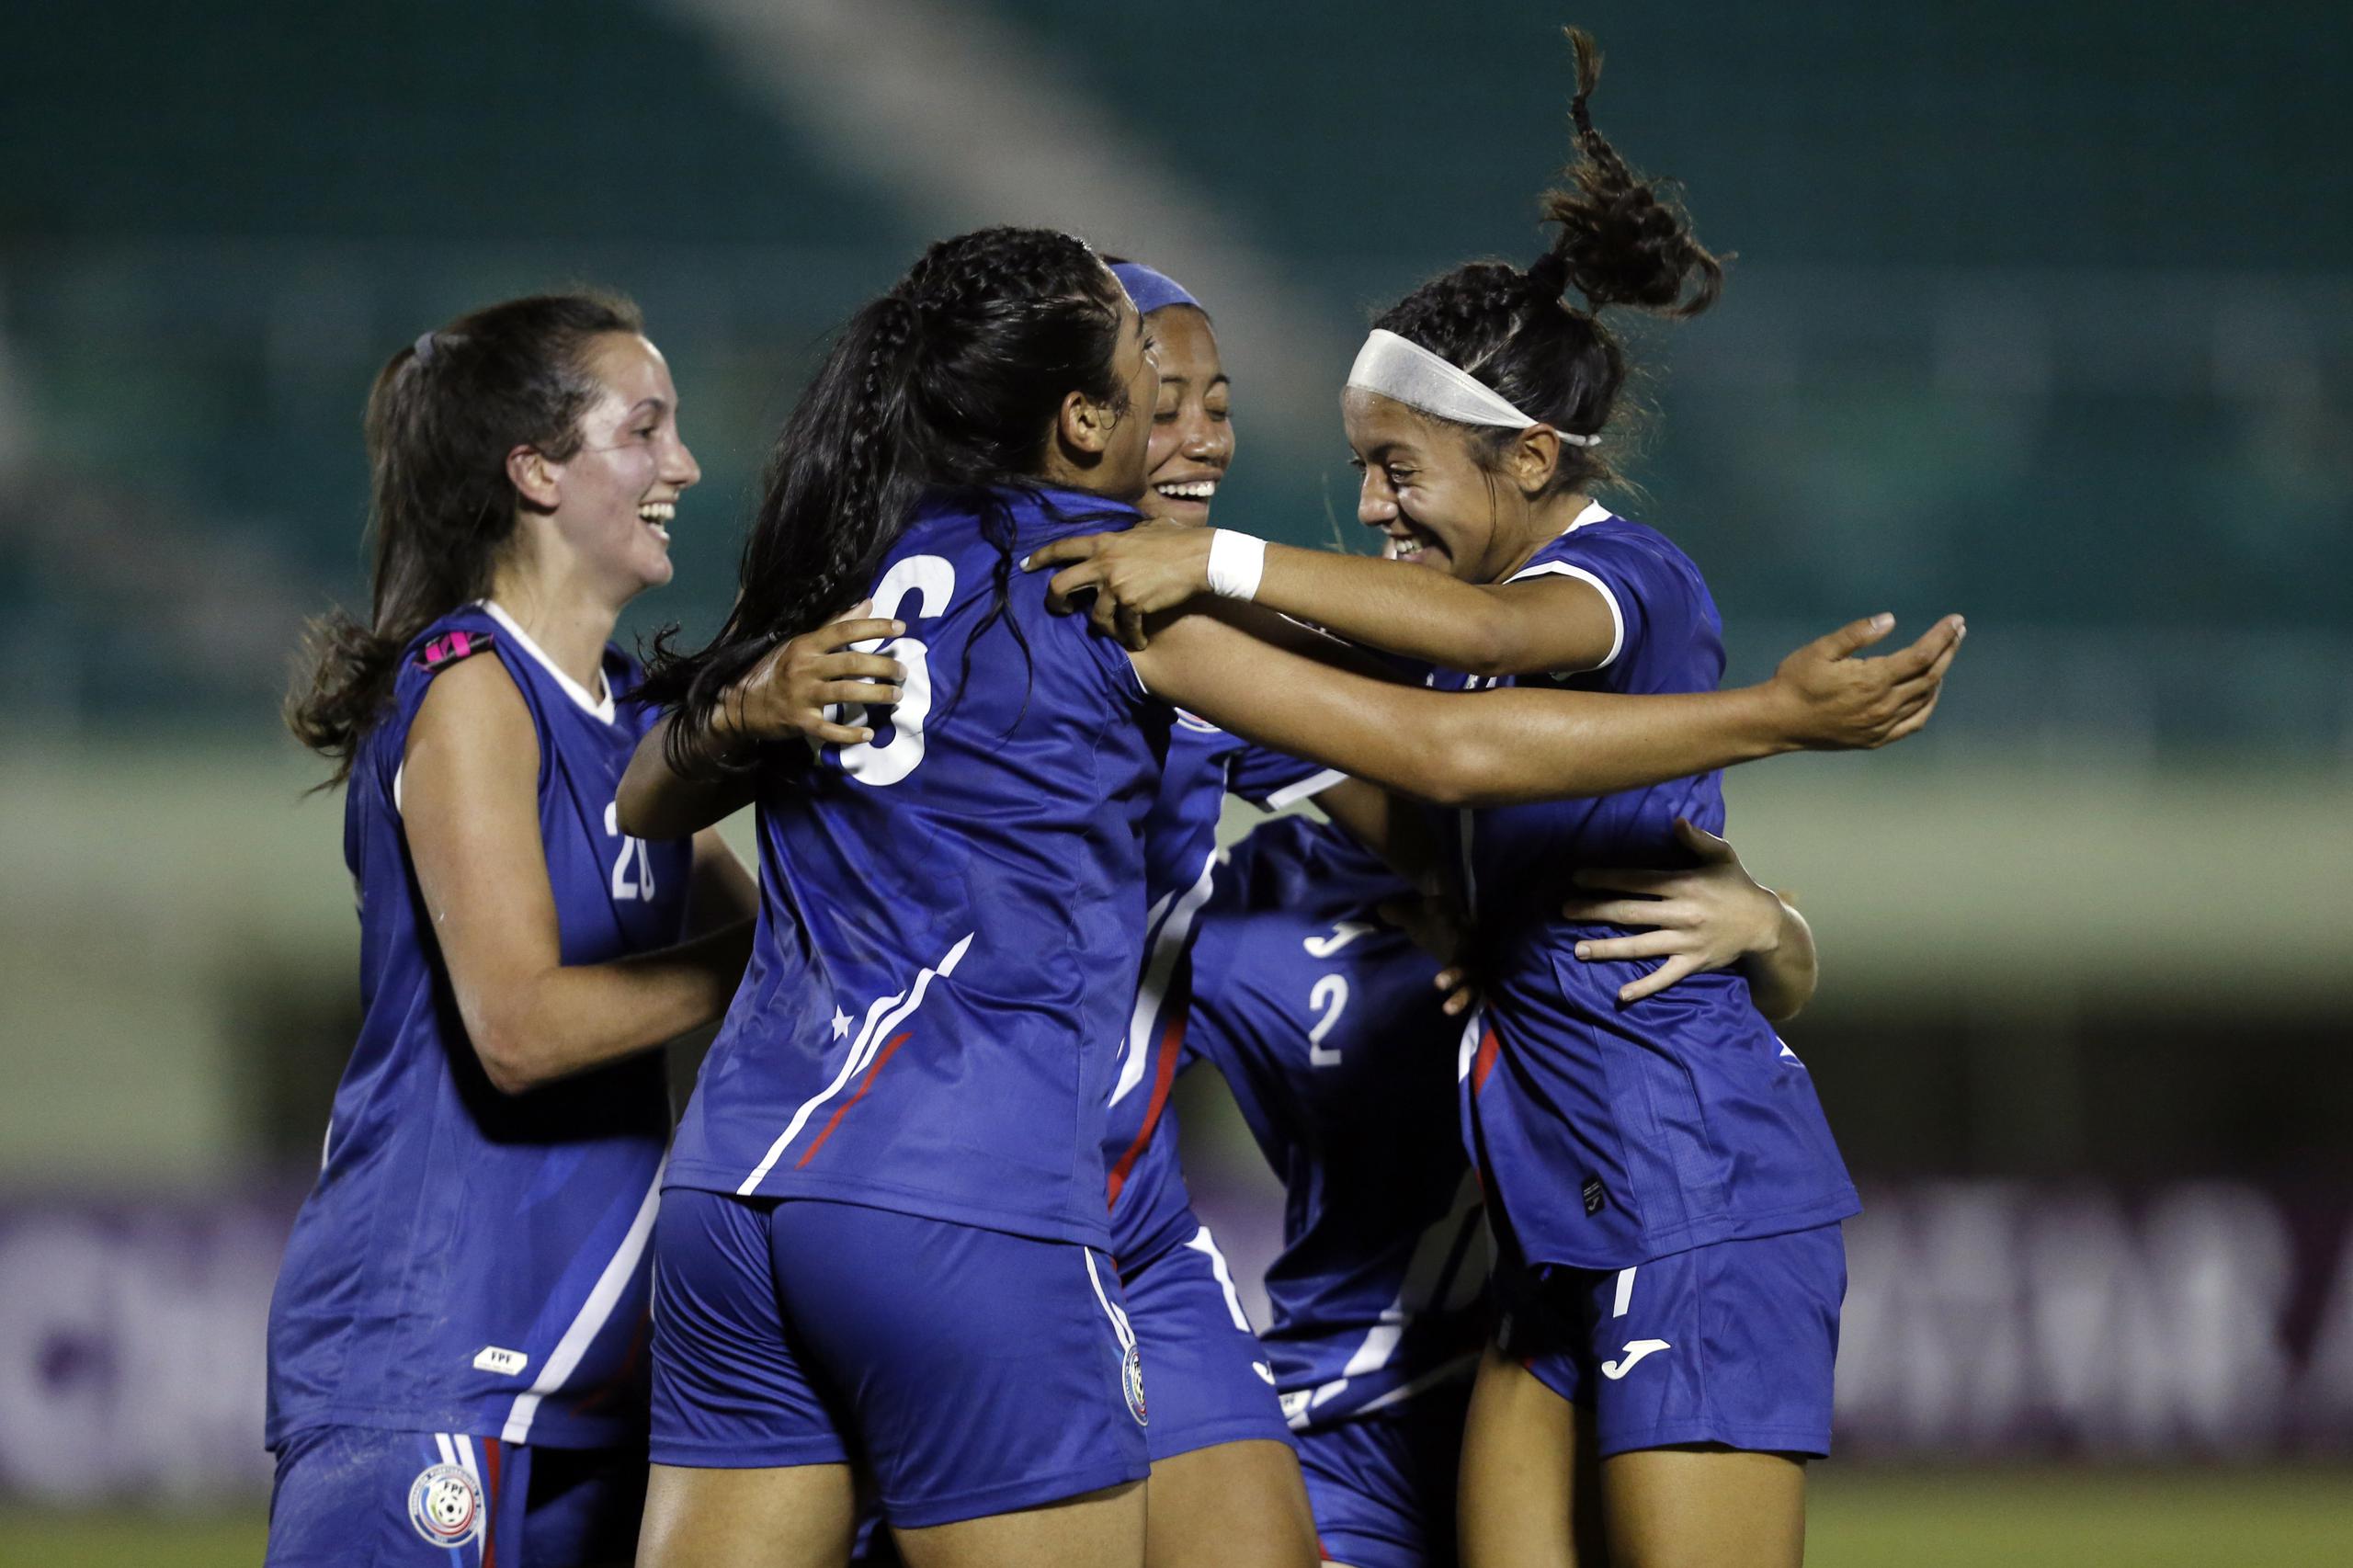 La Selección Nacional de Fútbol Femenino Sub20, clasificó a los Juegos Centroamericanos y del Caribe, al avanzar a los cuartos de final del torneo Concacaf del 2022.